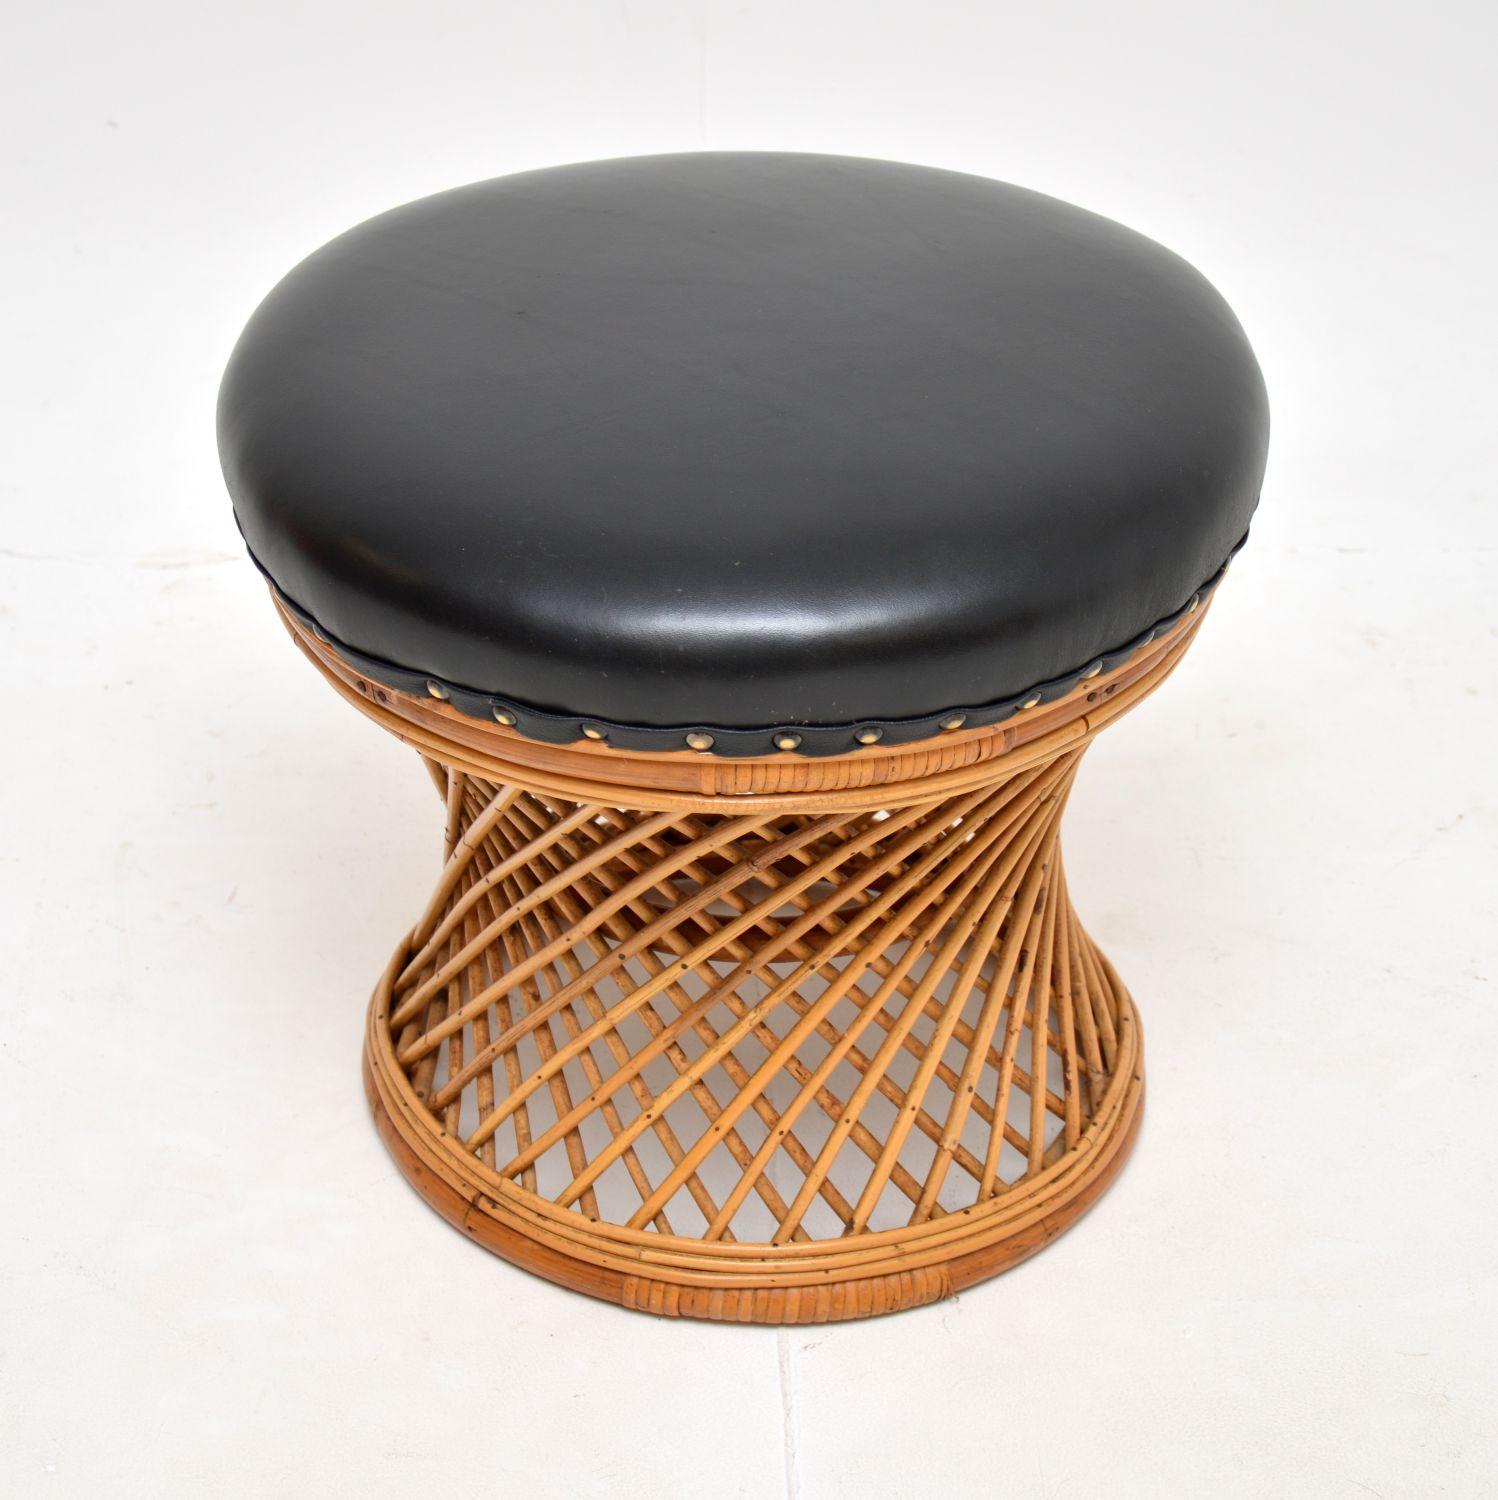 Un tabouret vintage élégant et inhabituel en bambou et osier avec une assise en cuir noir. Il a été fabriqué en Angleterre, il date des années 1970 environ.

Il est d'une belle taille et d'une belle facture. Le cadre en rotin tressé a une forme de